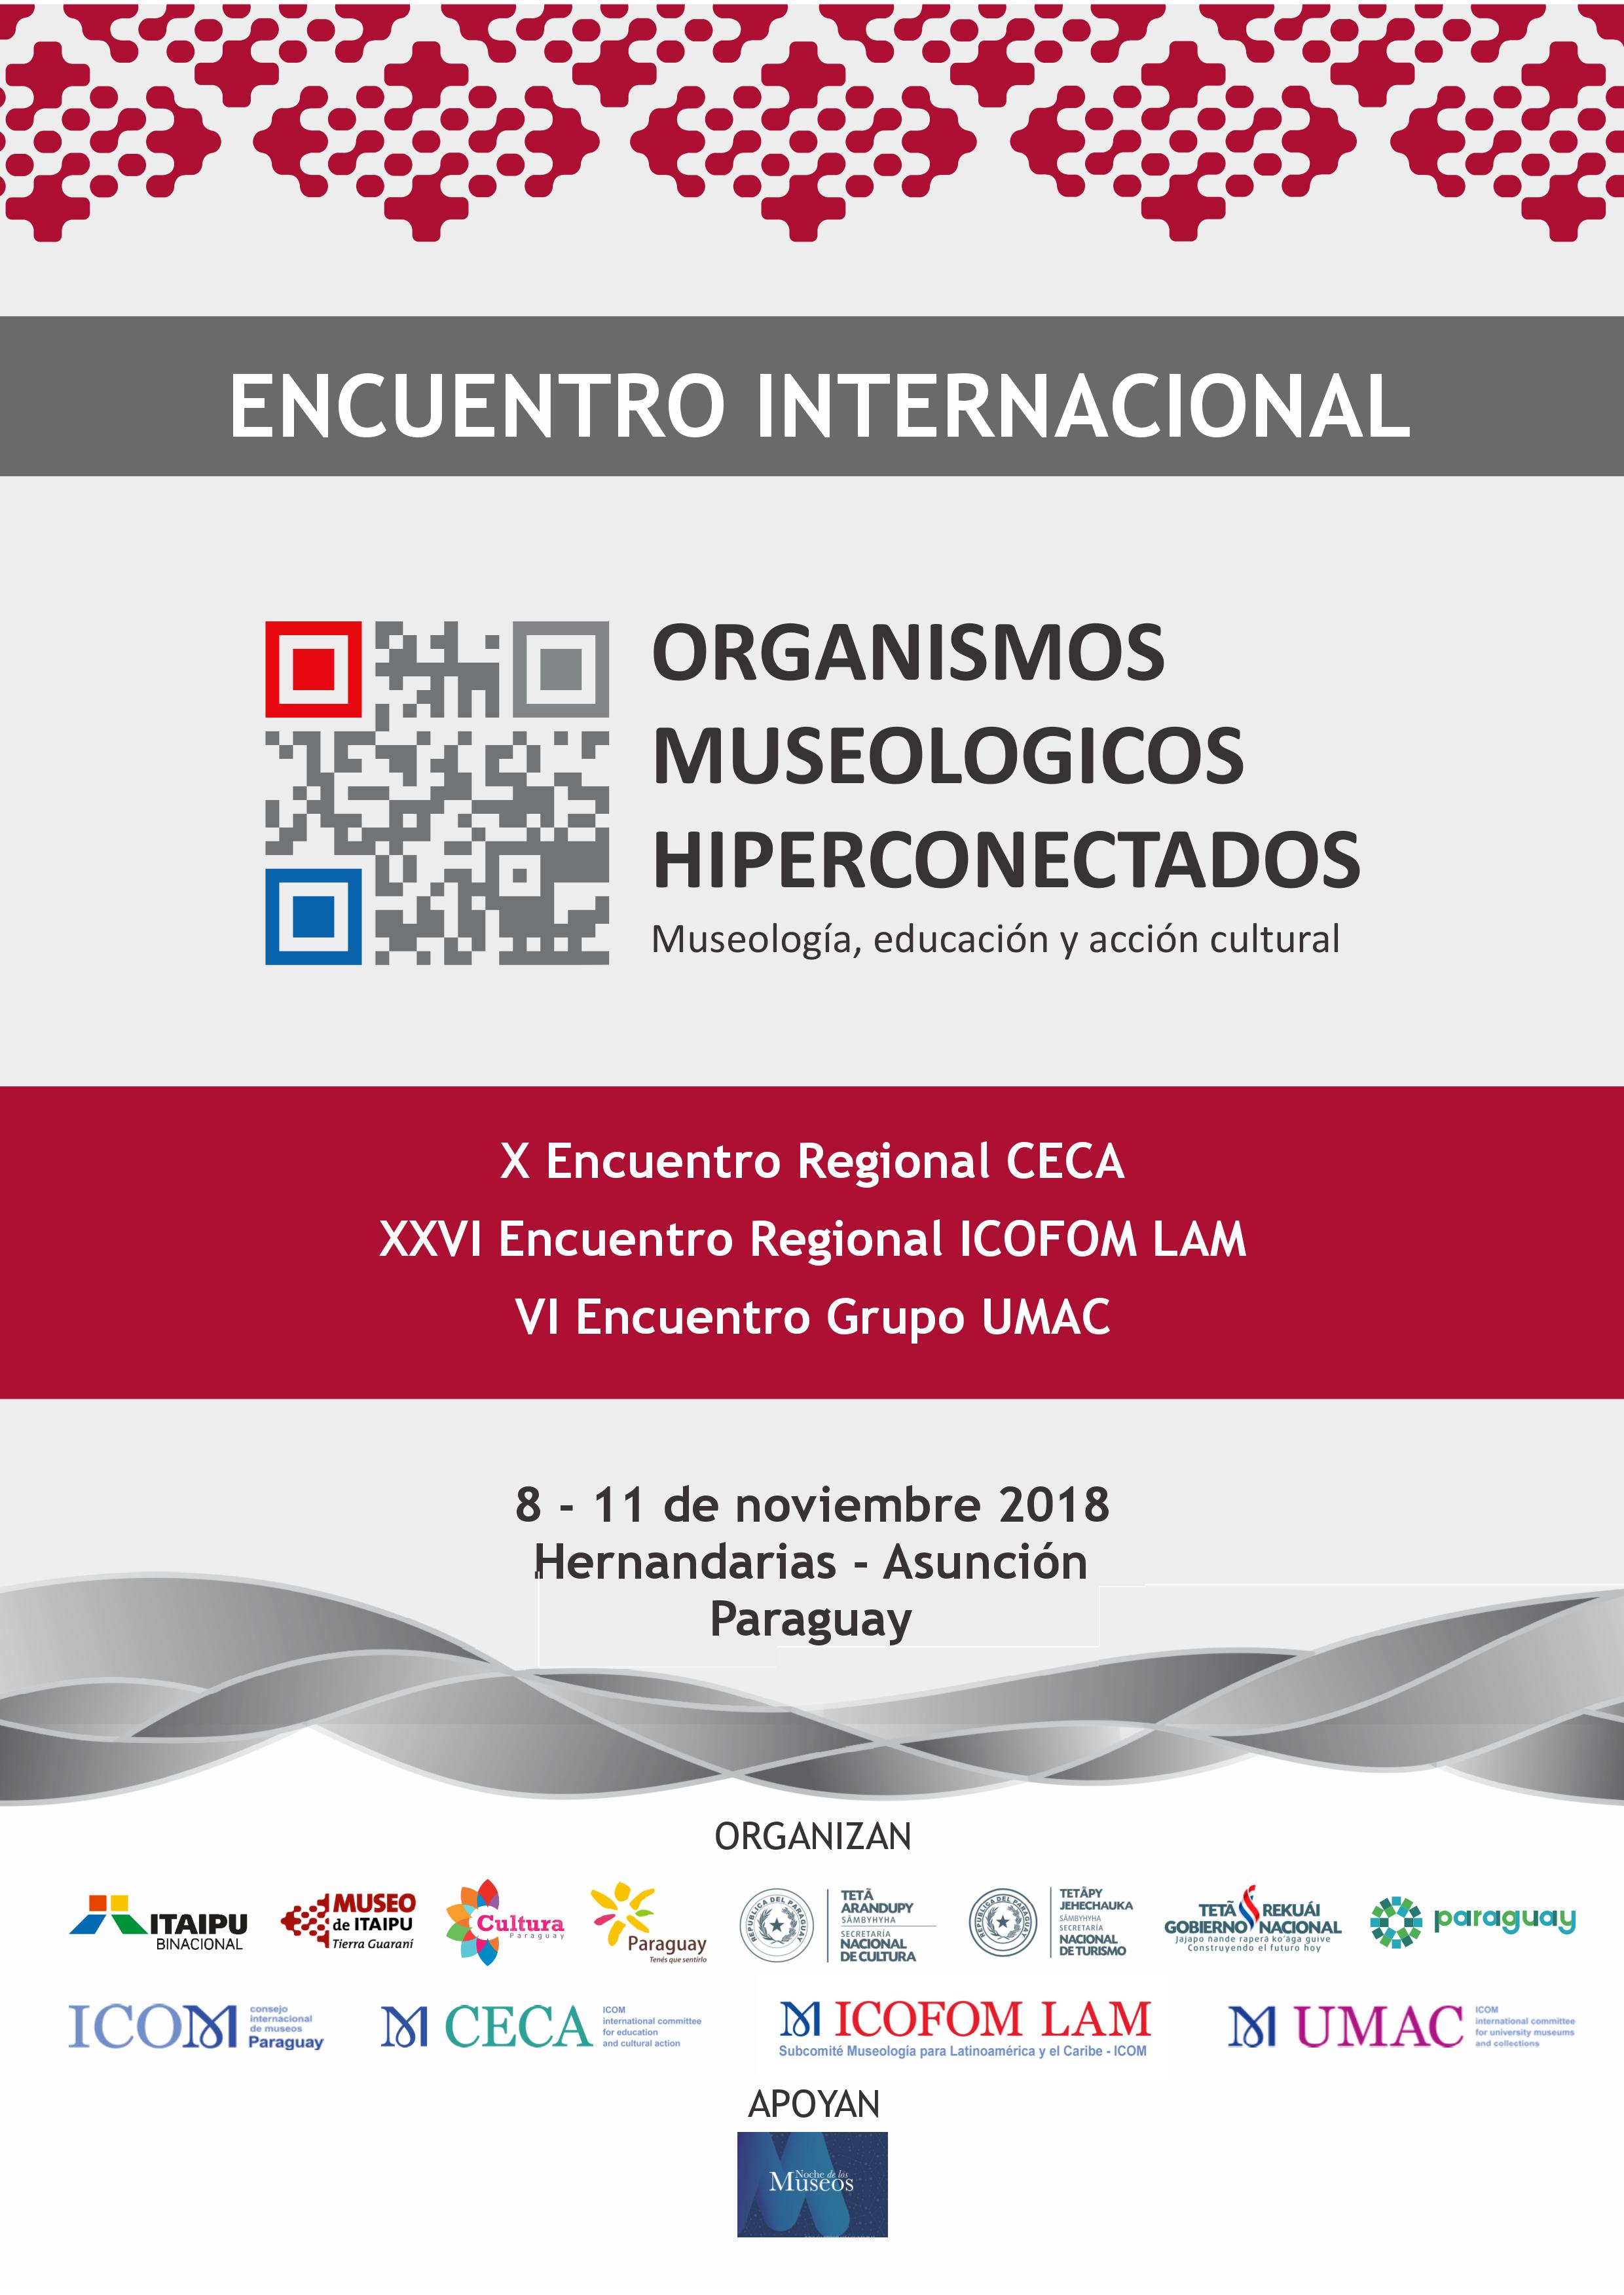 Encuentro Internacional de los Organismos Museológicos Hiperconectados se realizará en Paraguay imagen